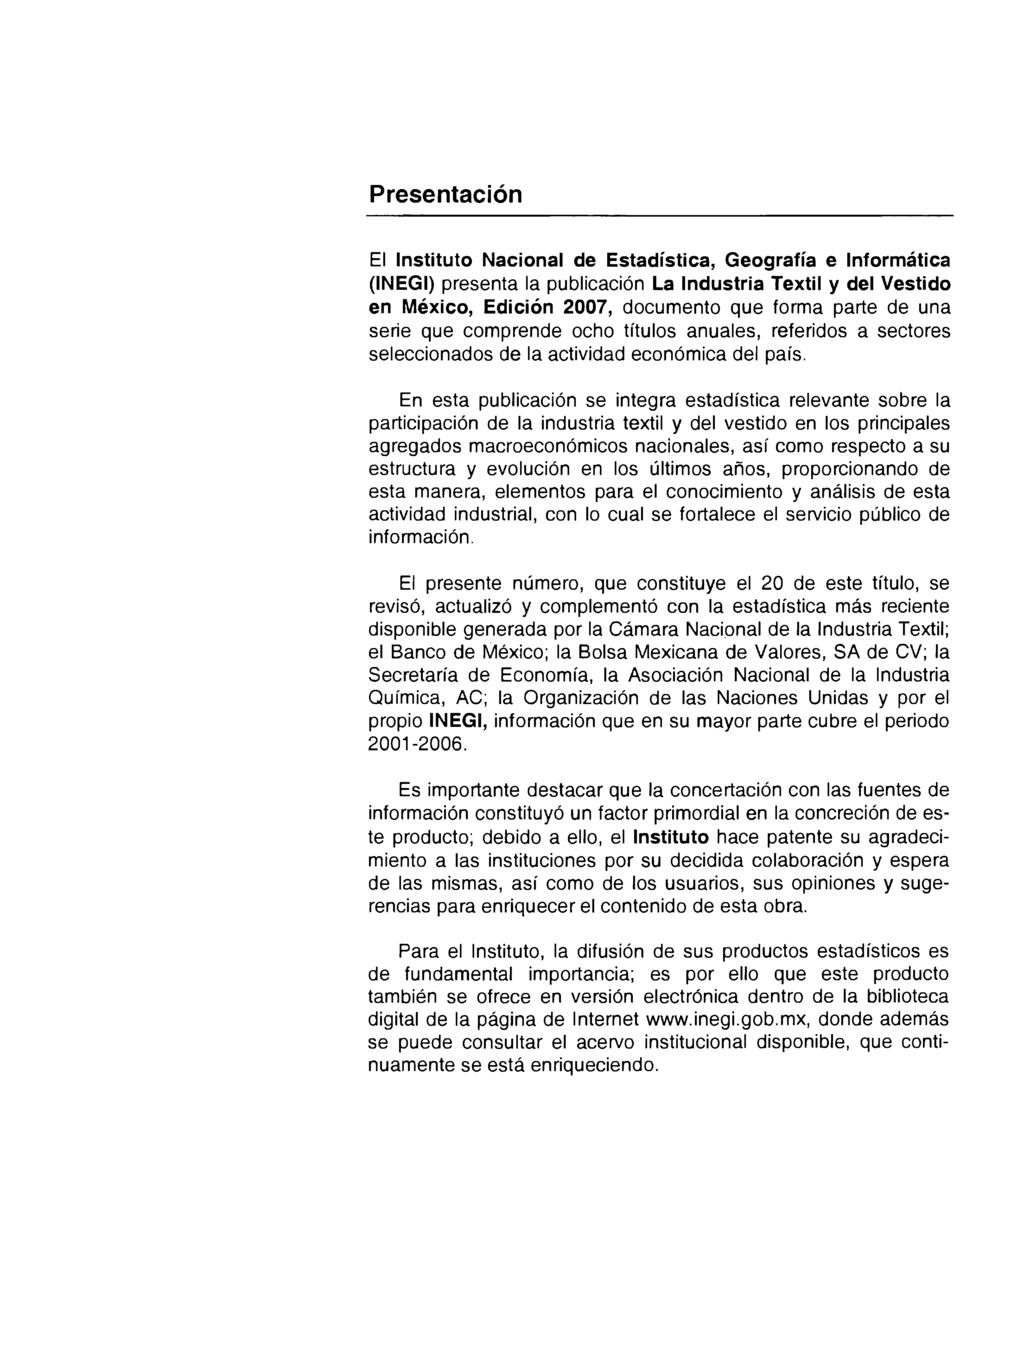 Presentación El Instituto Nacional de Estadística, Geografía e Informática (INEGI) presenta la publicación La Industria Textil y del Vestido en México, Edición 2007, documento que forma parte de una